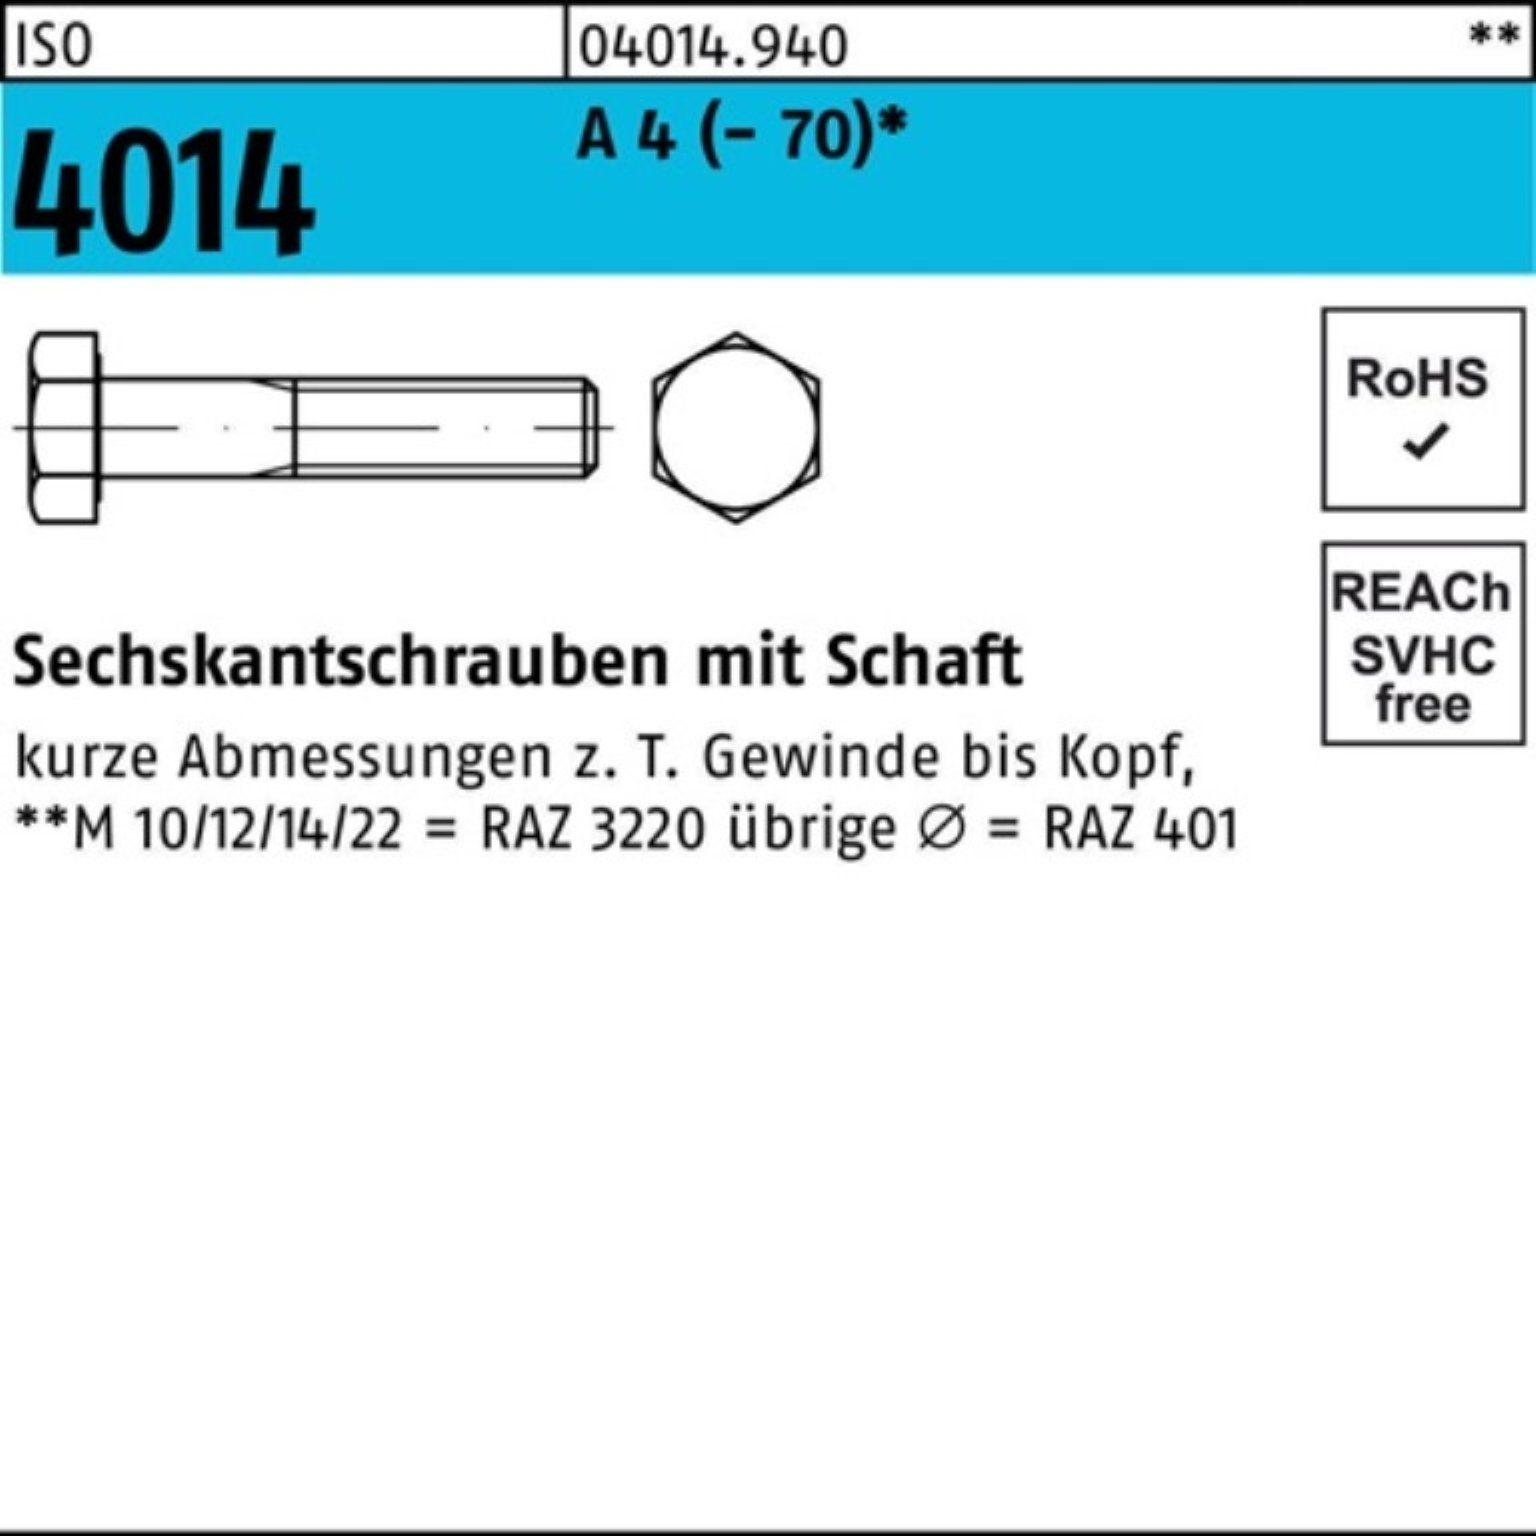 Bufab Sechskantschraube 100er Pack Sechskantschraube ISO 4014 Schaft M6x 90 A 4 (70) 100 St